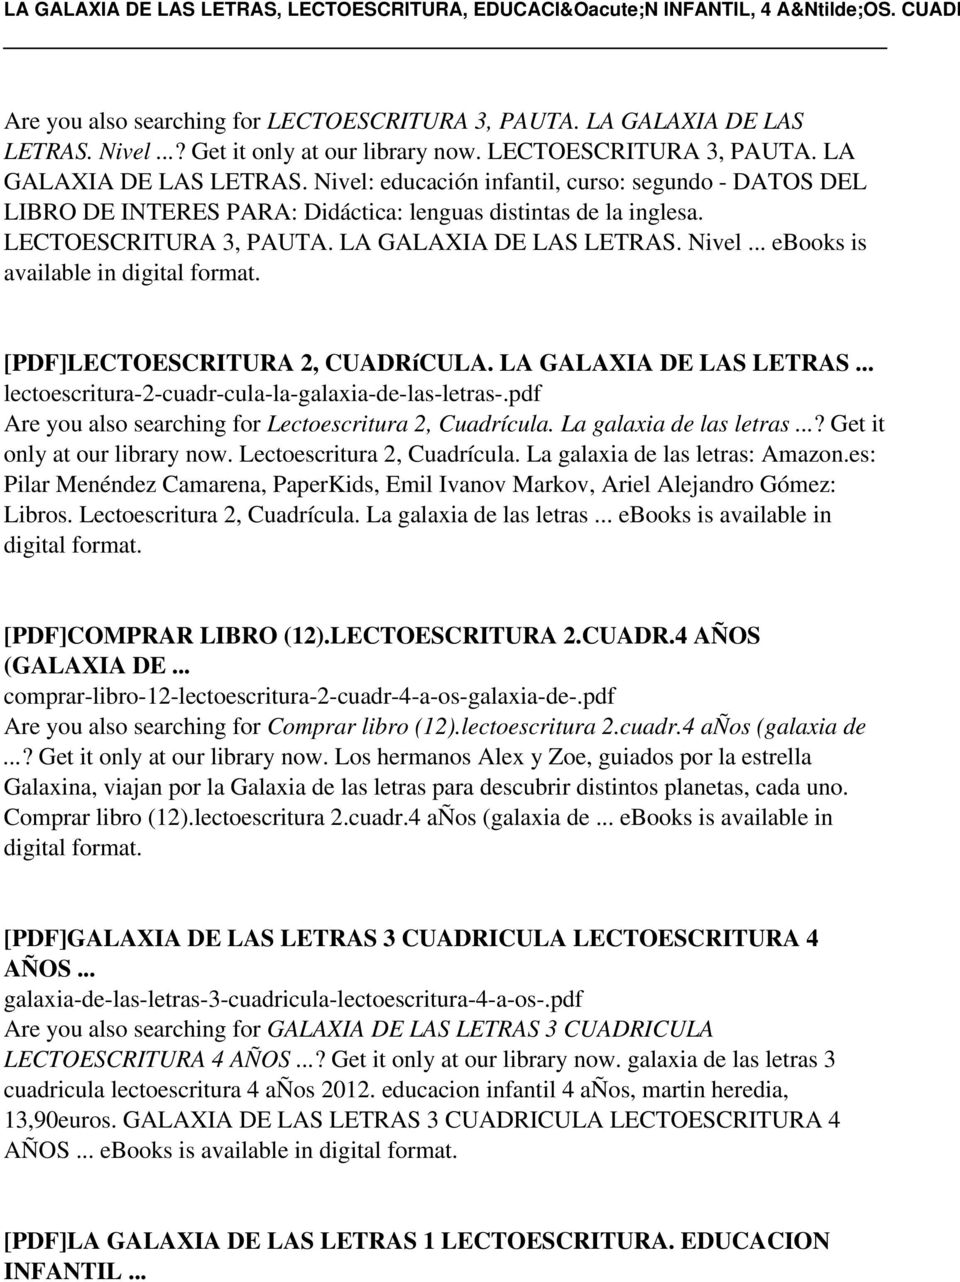 diario Refinería preocupación LA GALAXIA DE LAS LETRAS, LECTOESCRITURA, EDUCACIÓN INFANTIL, 4 AÑOS. CUADR  - PDF Free Download